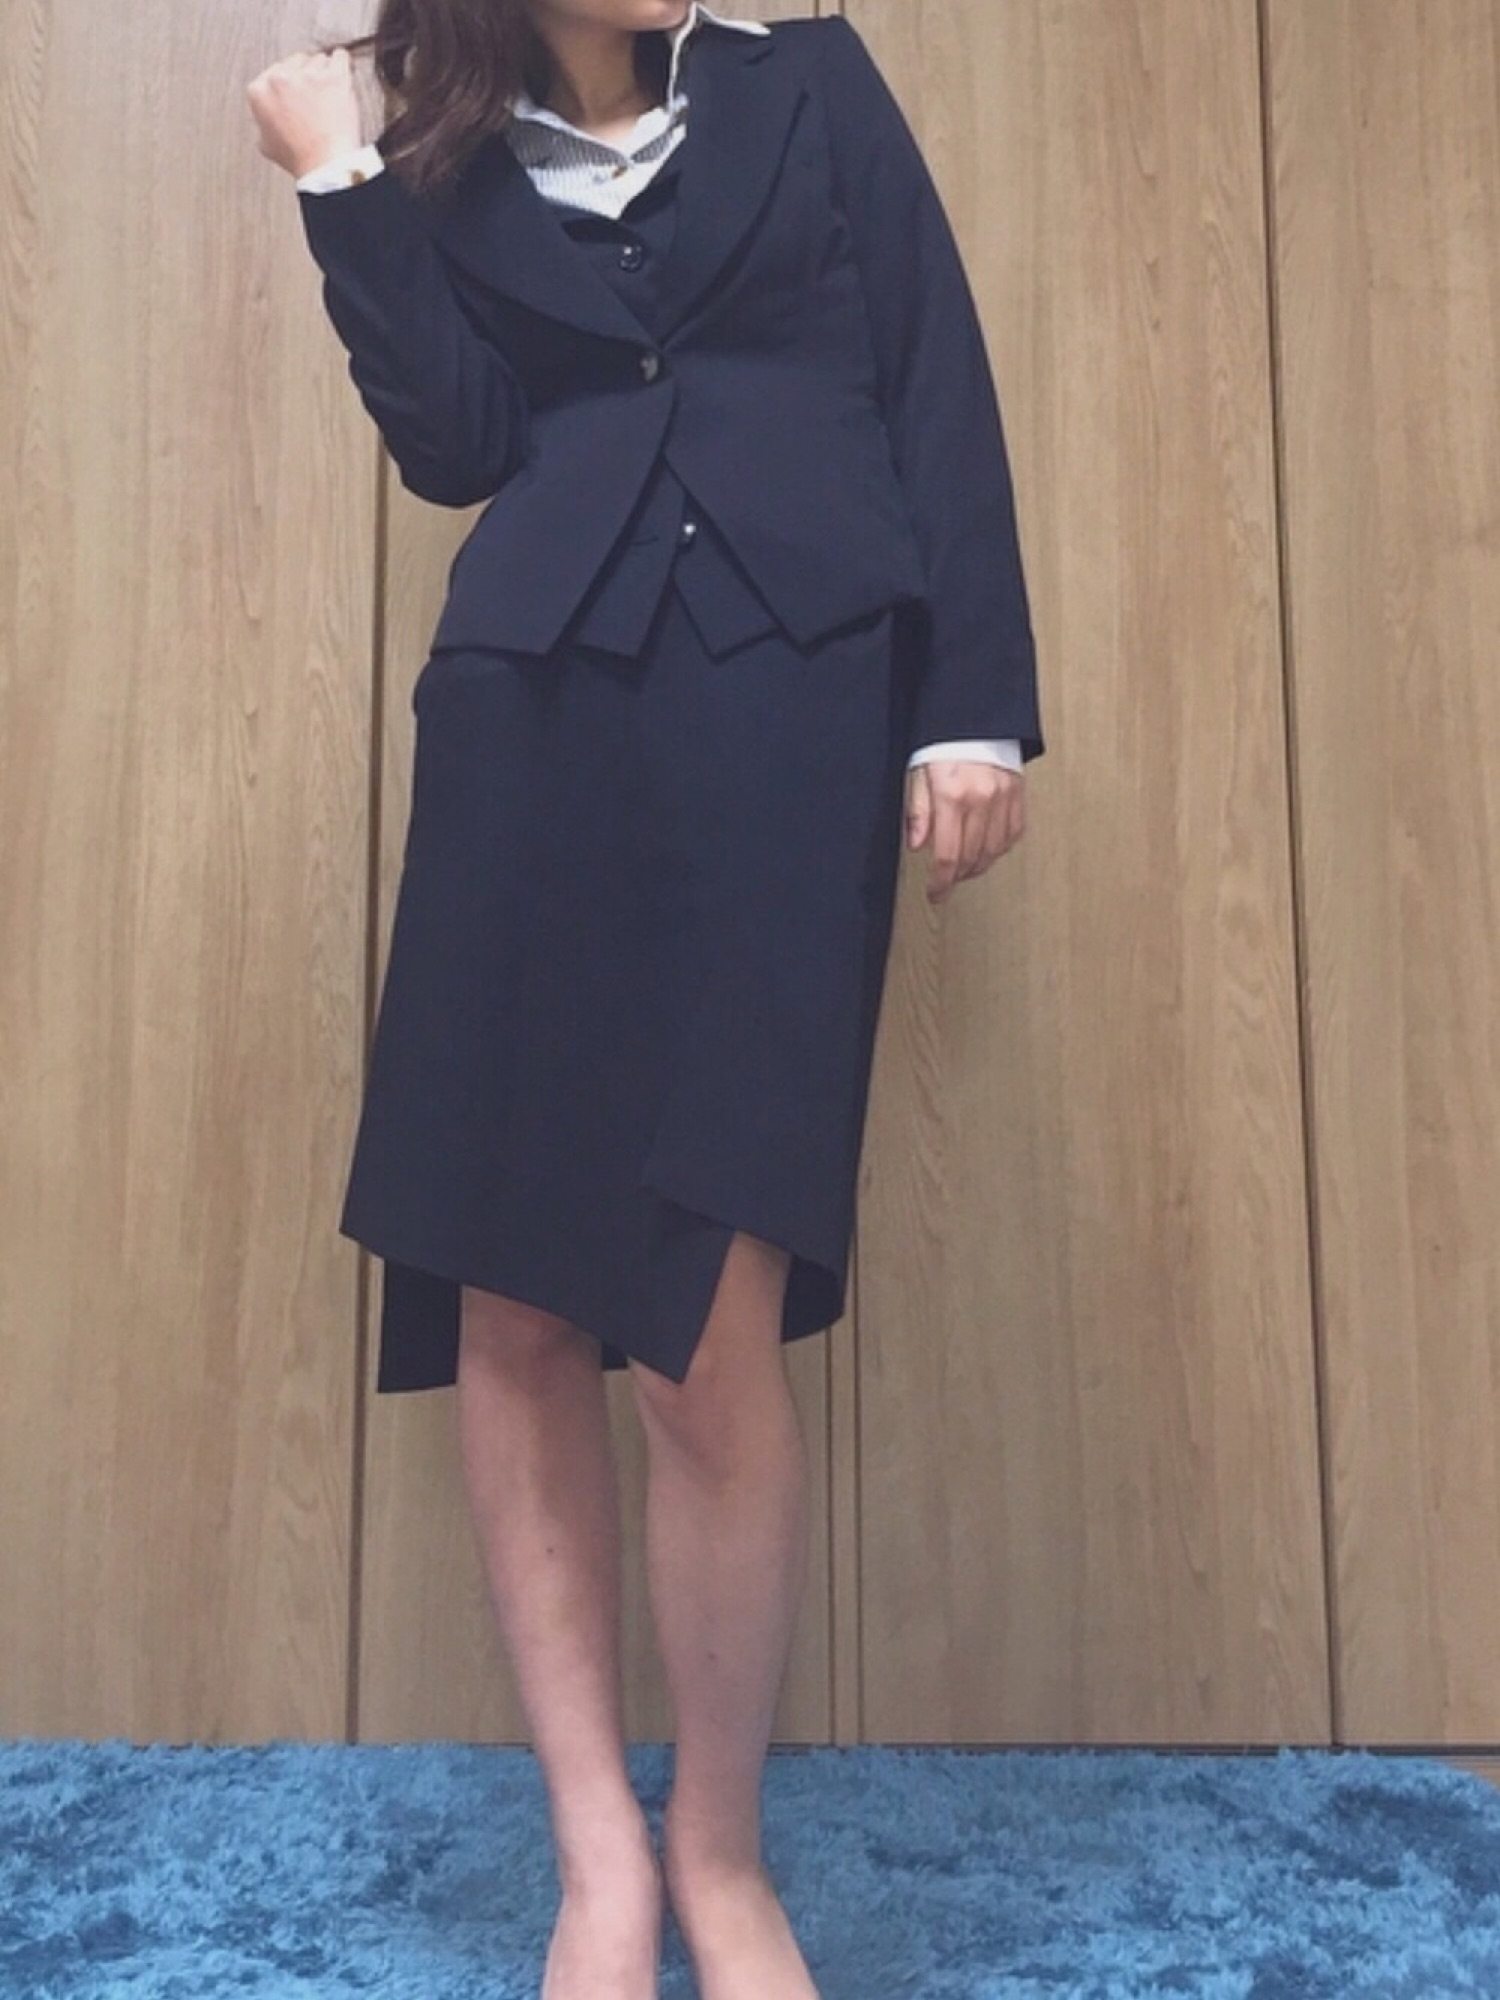 Vivienne Westwoodのスーツスカートを使ったレディース人気